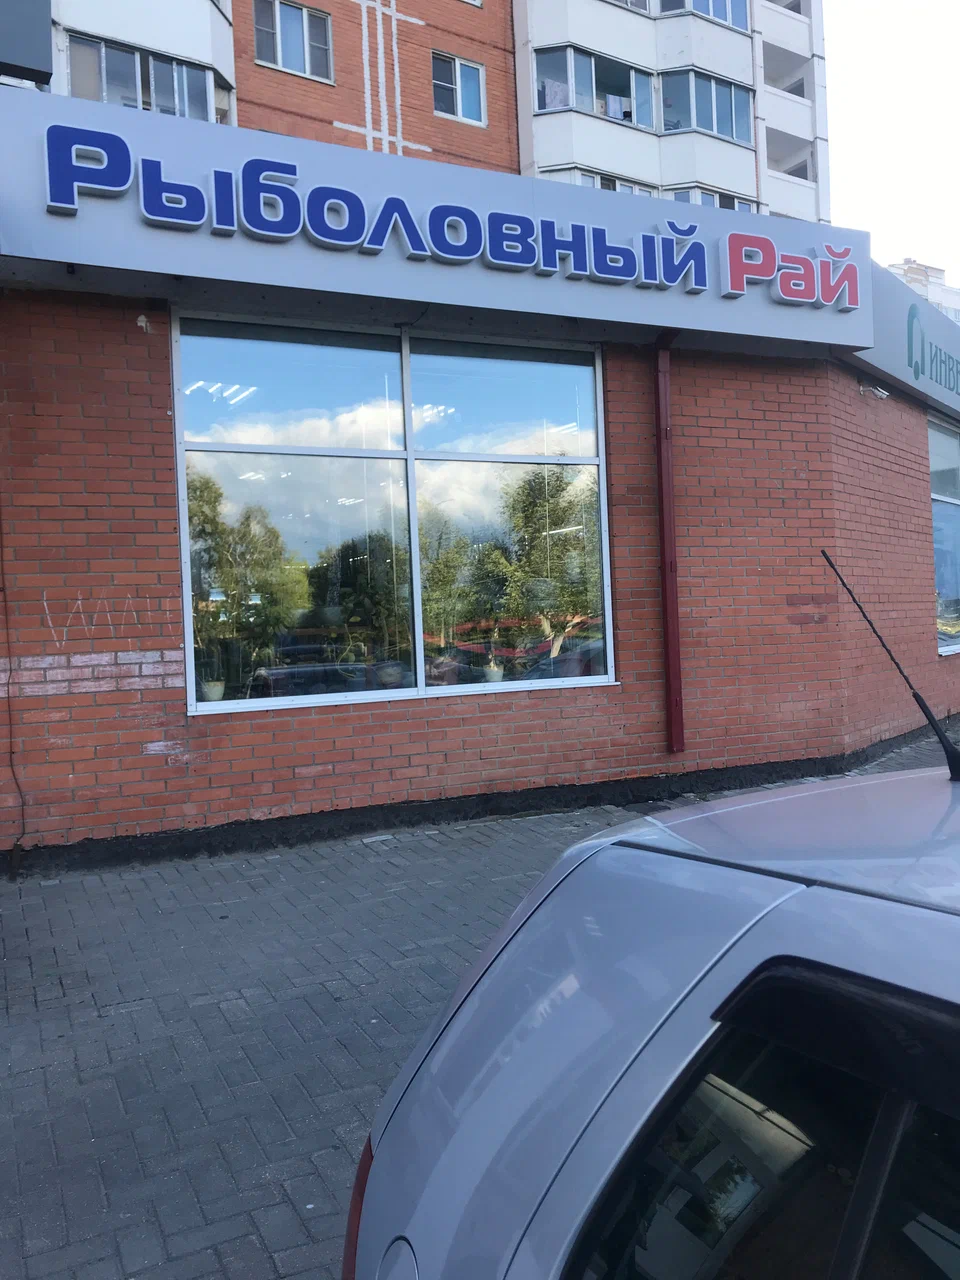 Вход в магазин "Рыболовный рай" на Московском шоссе в Серпухове